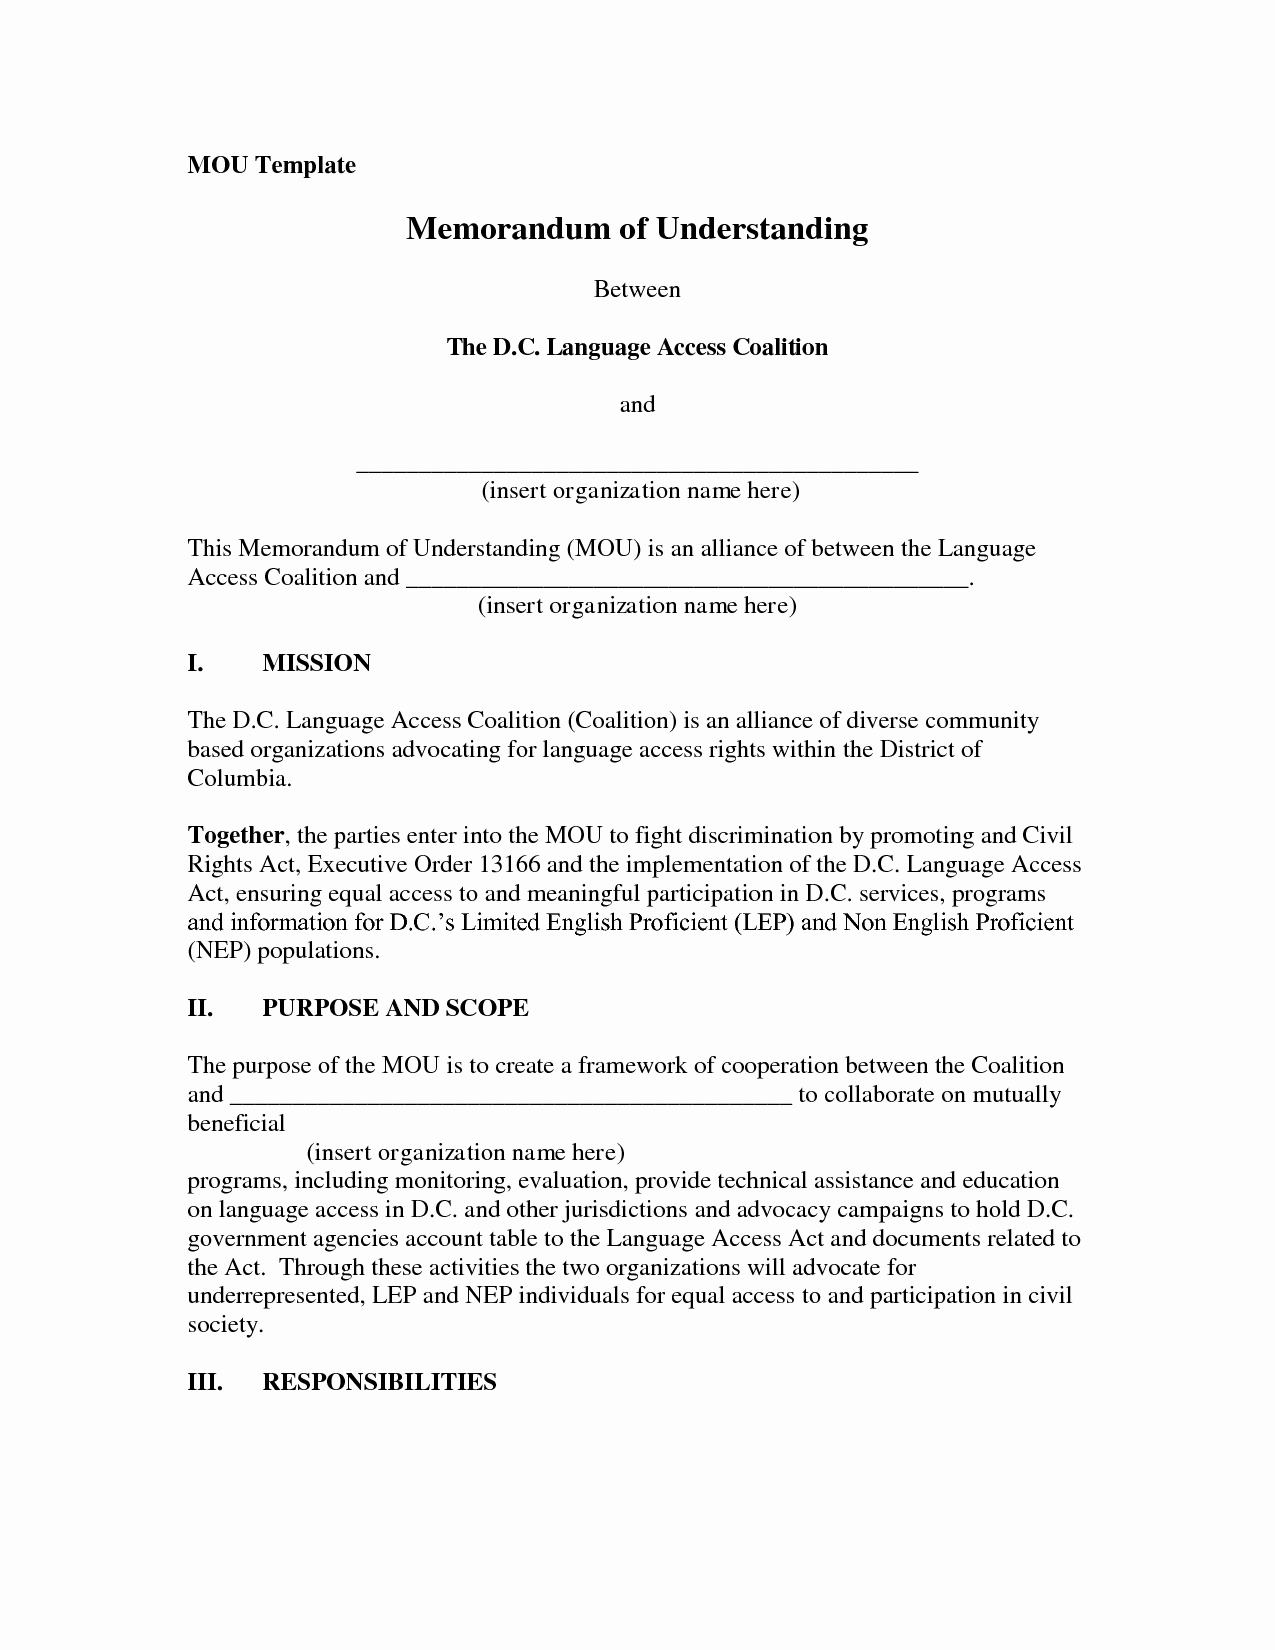 Memorandum Of Understanding Sample Lovely Dozerausm Memorandum Of Understanding Template form